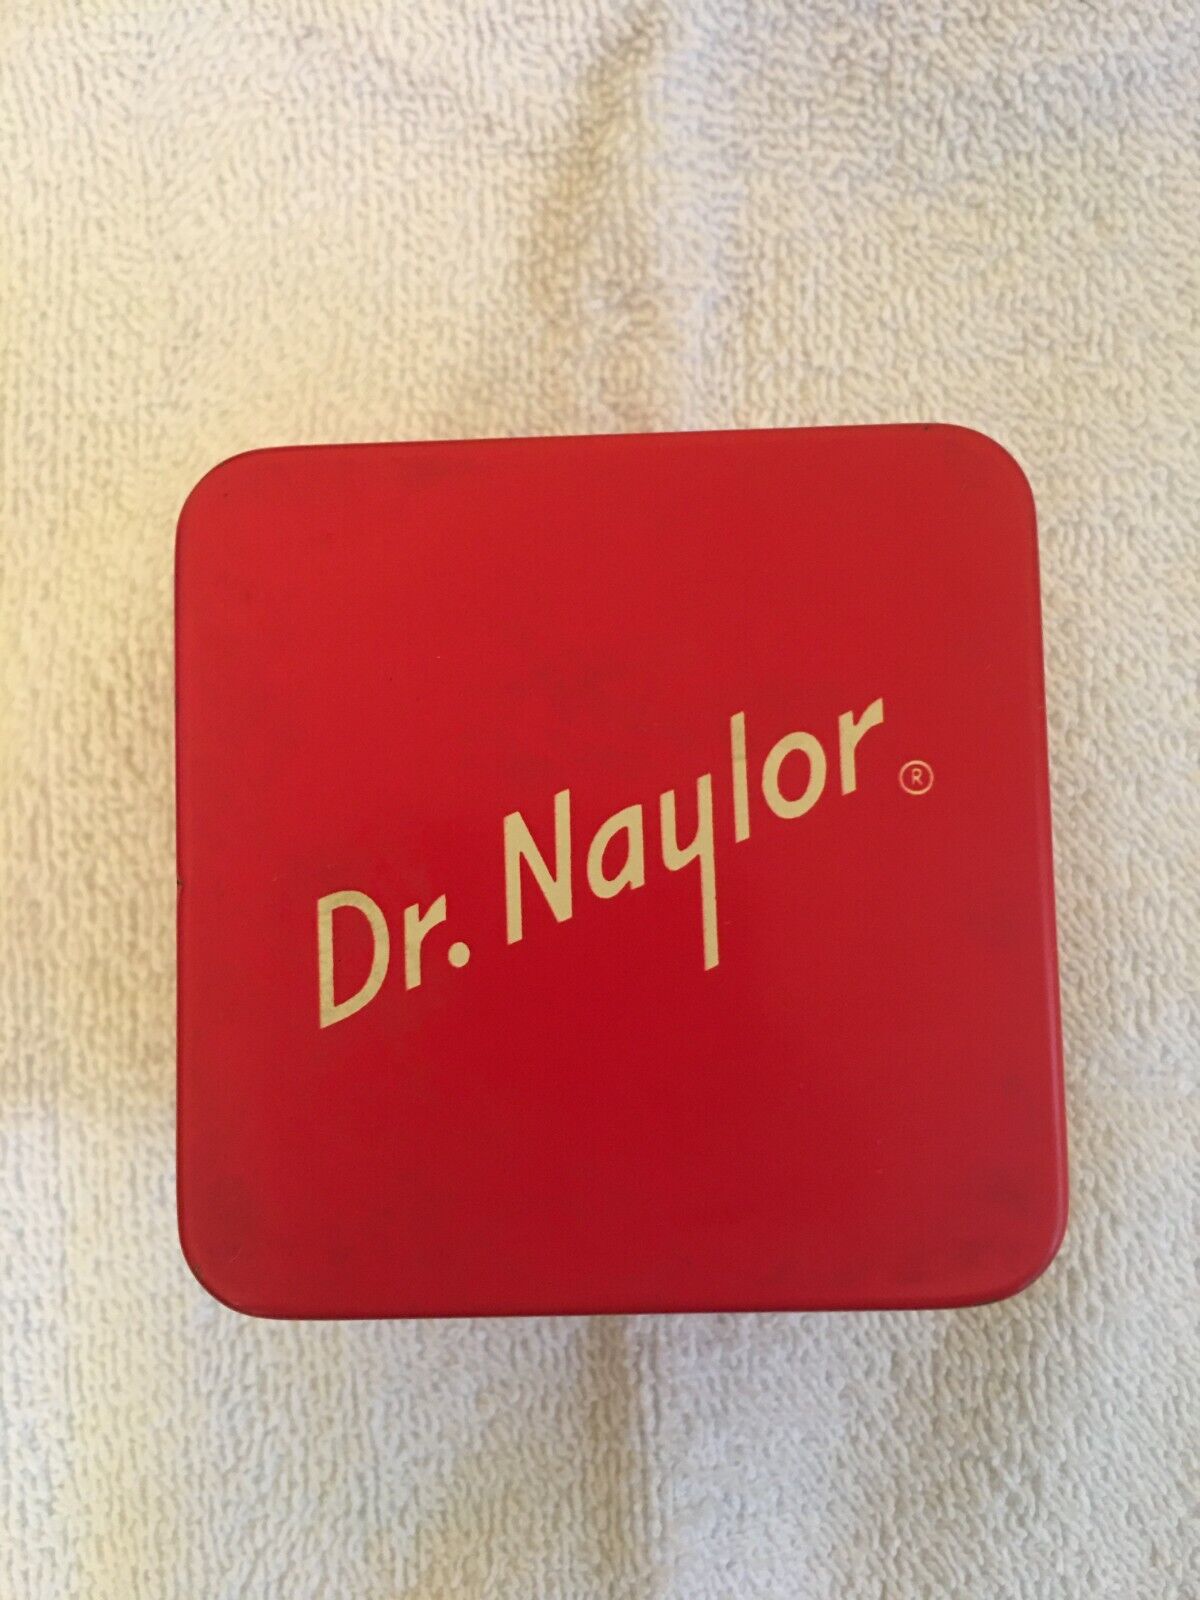 Dr. Naylor Udder Balm 9 oz. Antiseptic Ointment Vintage TIN Exp. 10/84